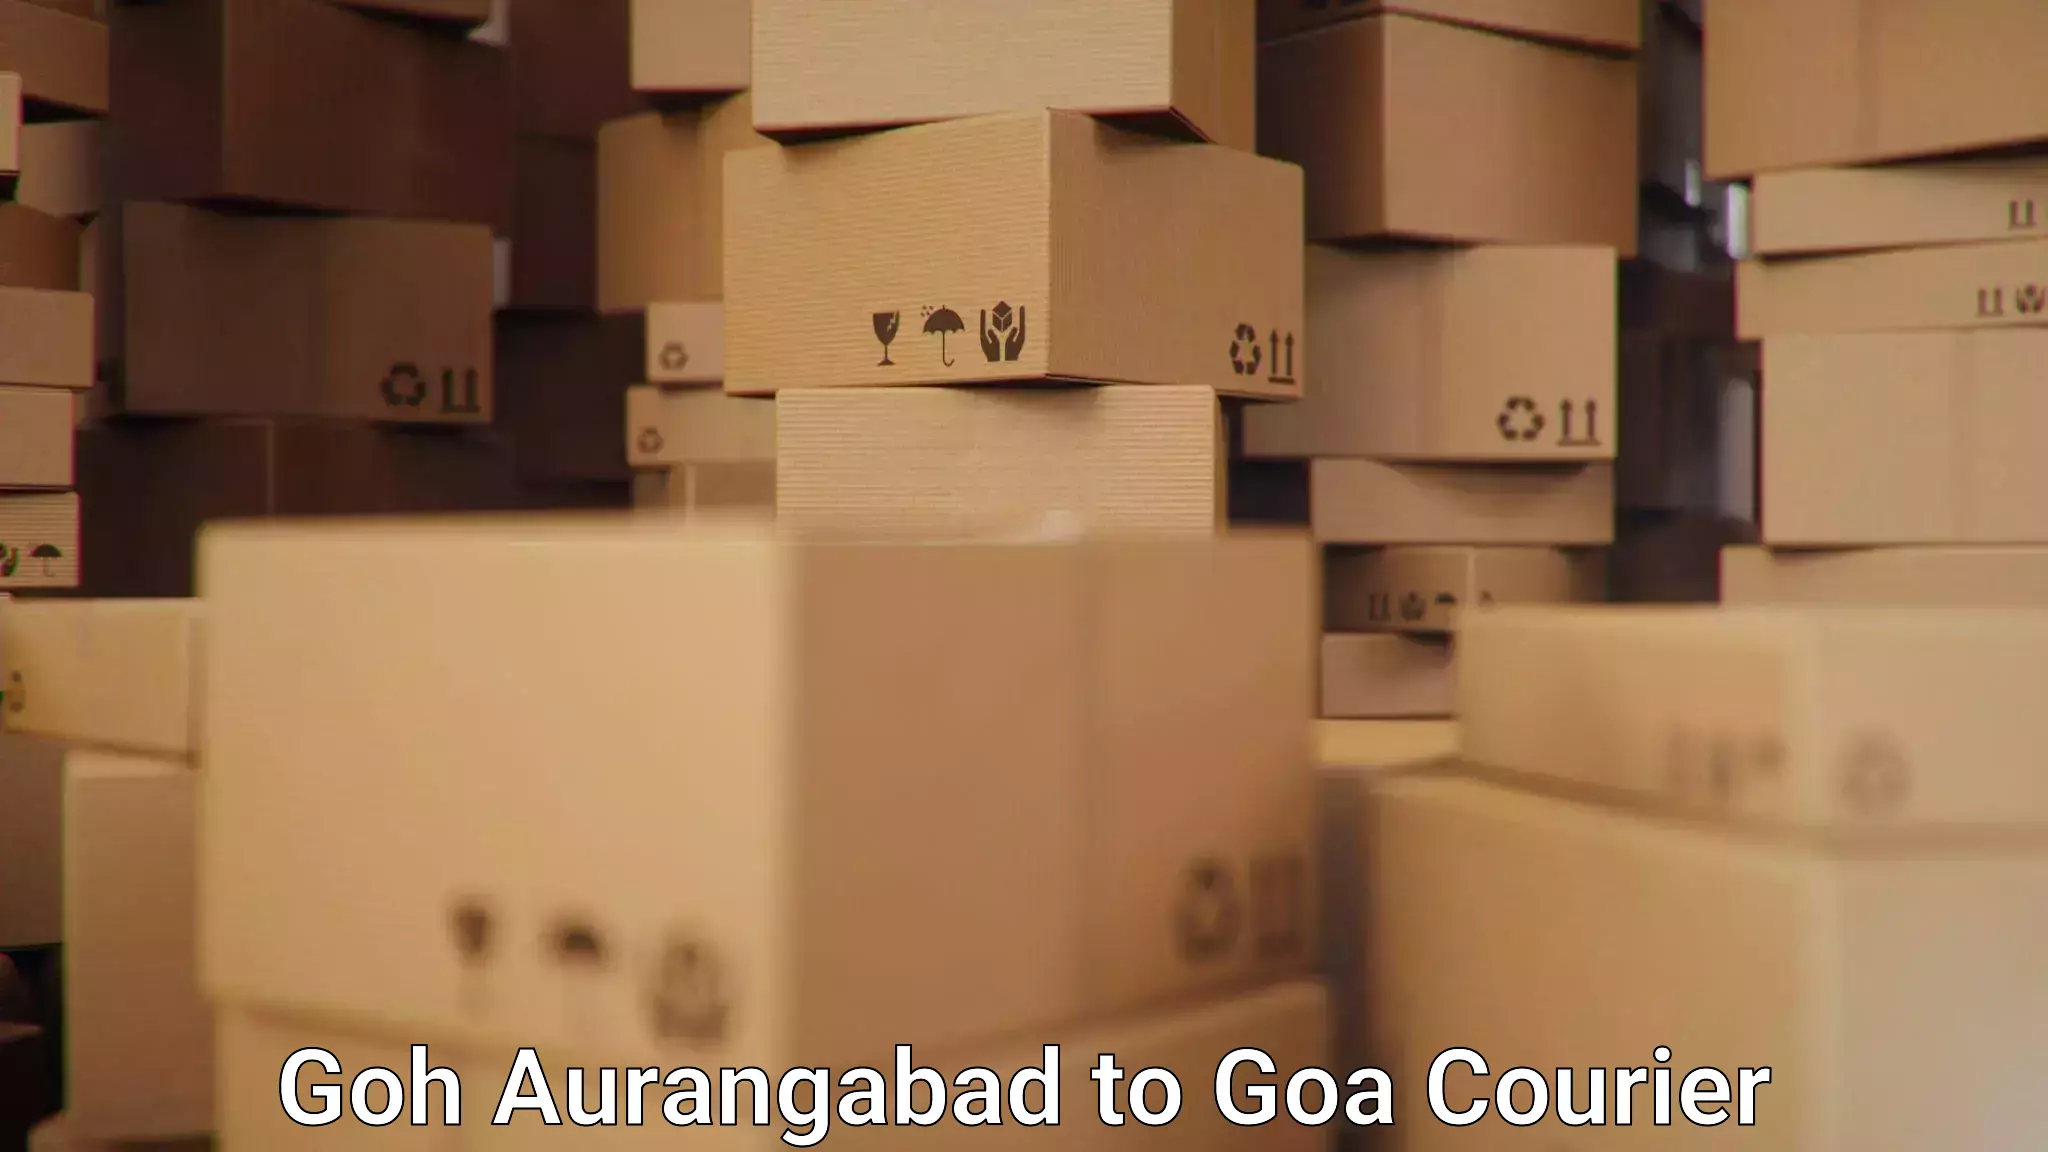 Track and trace shipping Goh Aurangabad to Goa